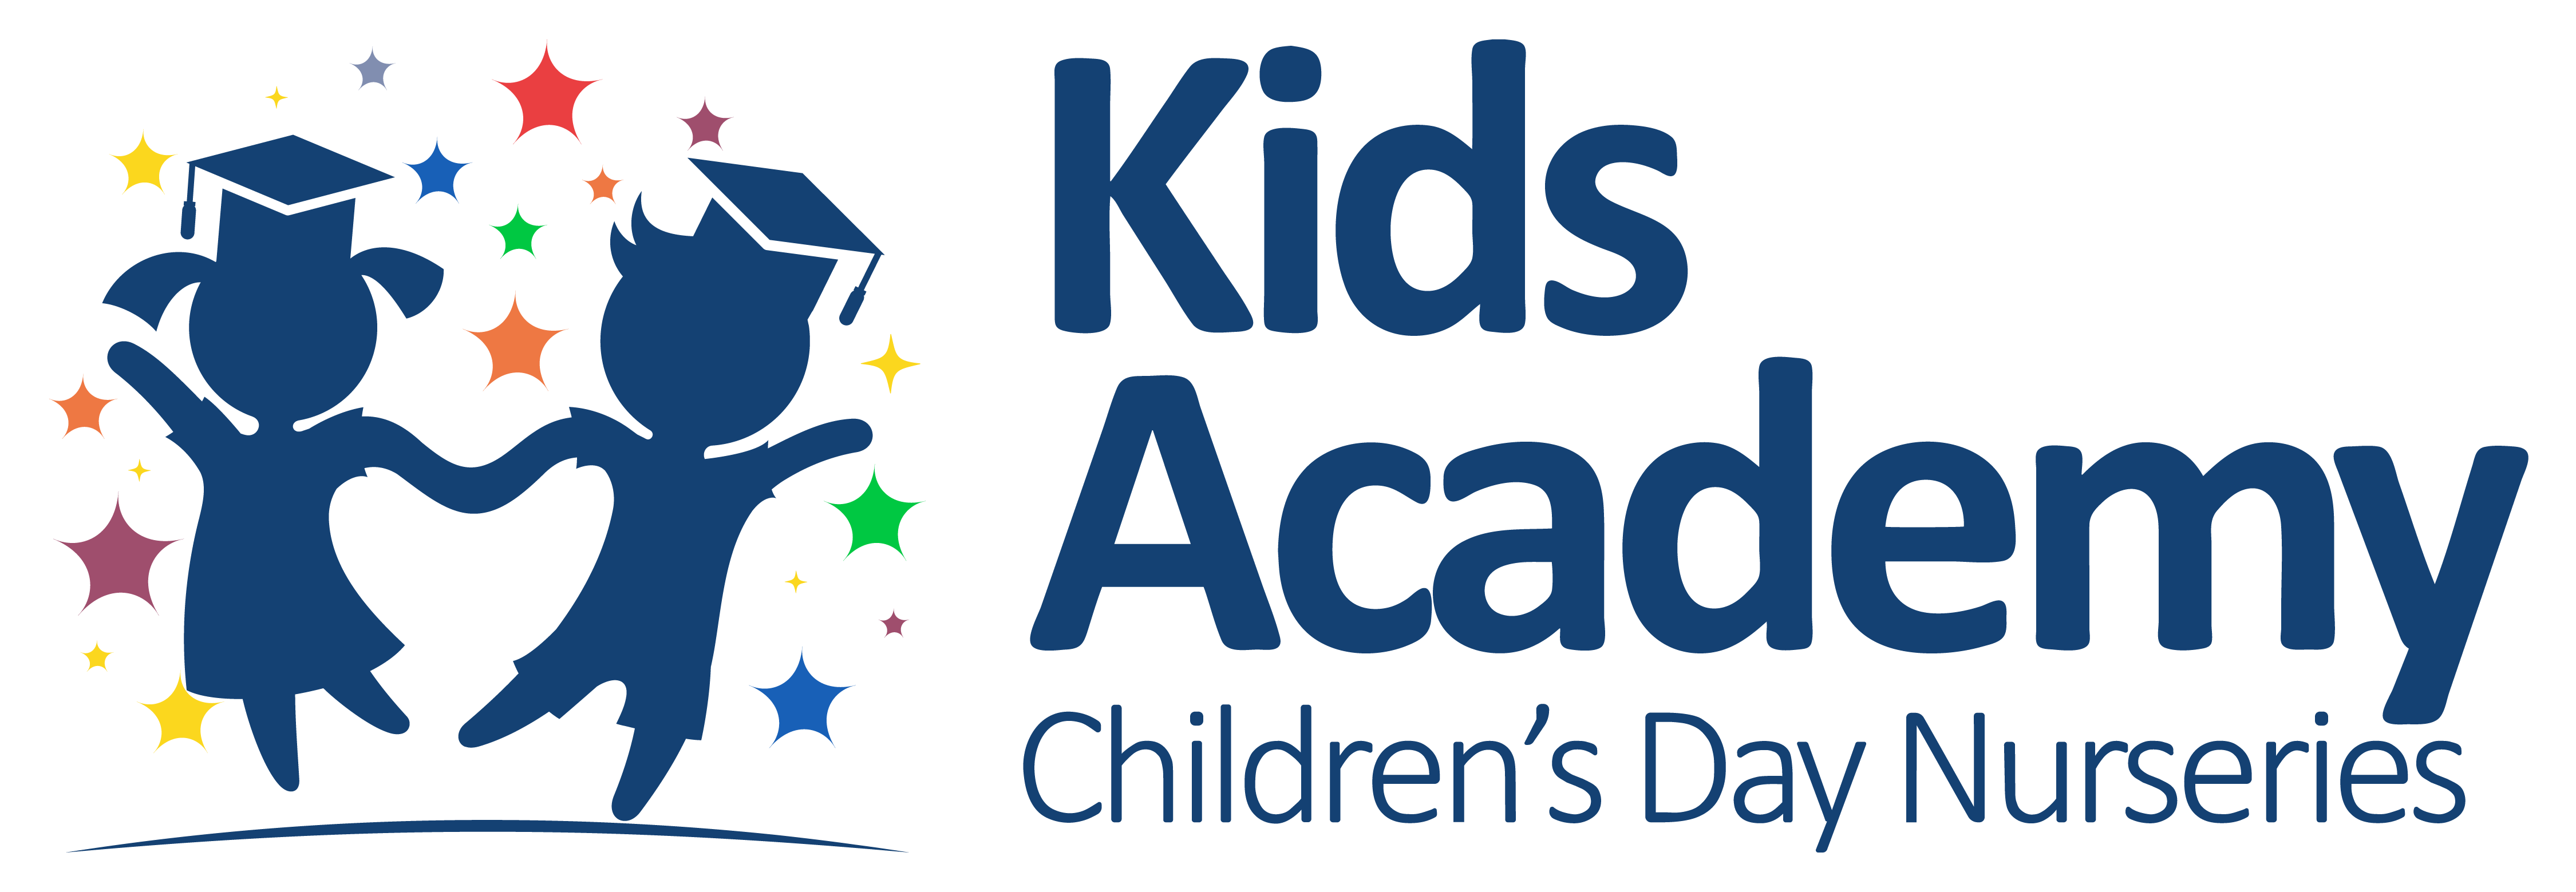 Kids Academy Nursery UAE